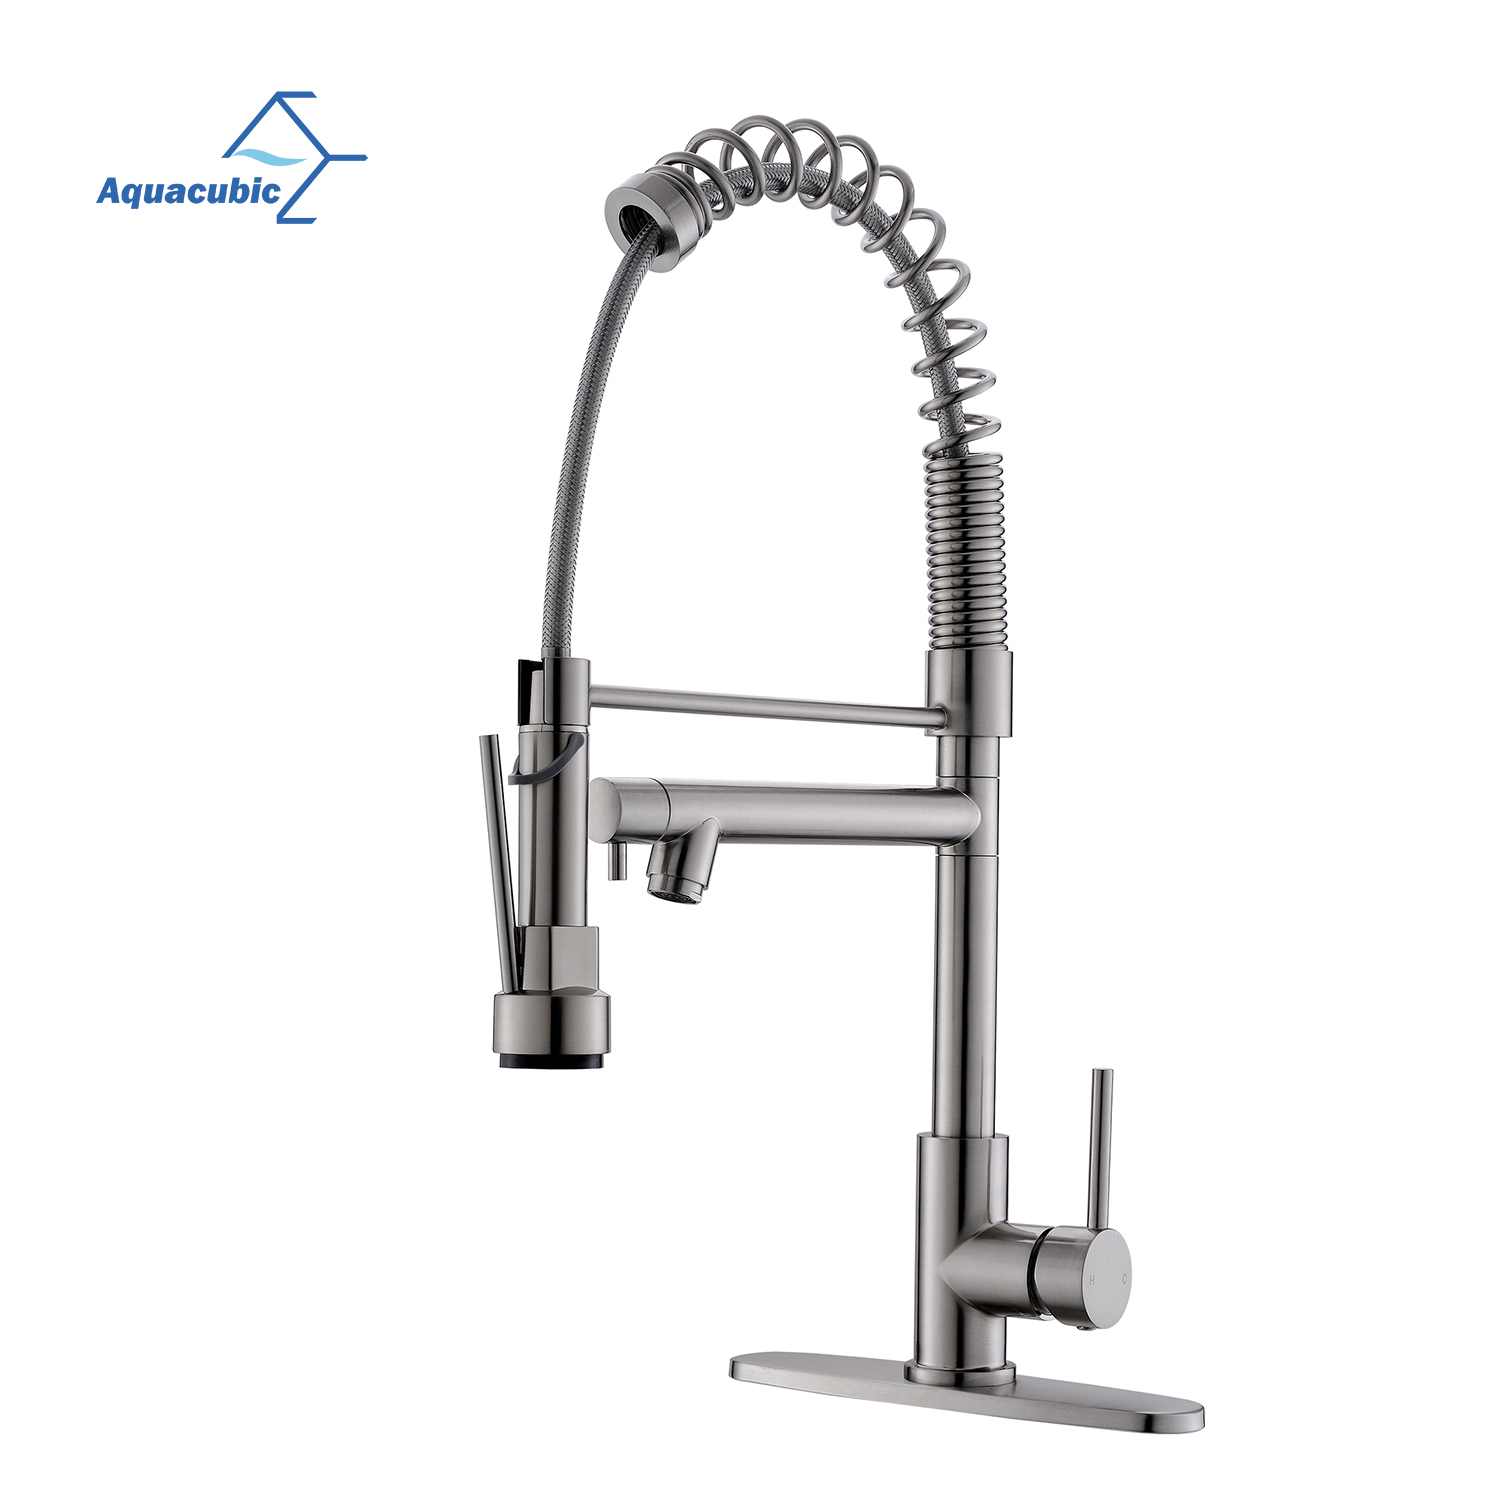 Aquacubic cUPC NSF Design moderne certifié à faible teneur en plomb élégant robinet de cuisine à eau rabattable AF3044-5